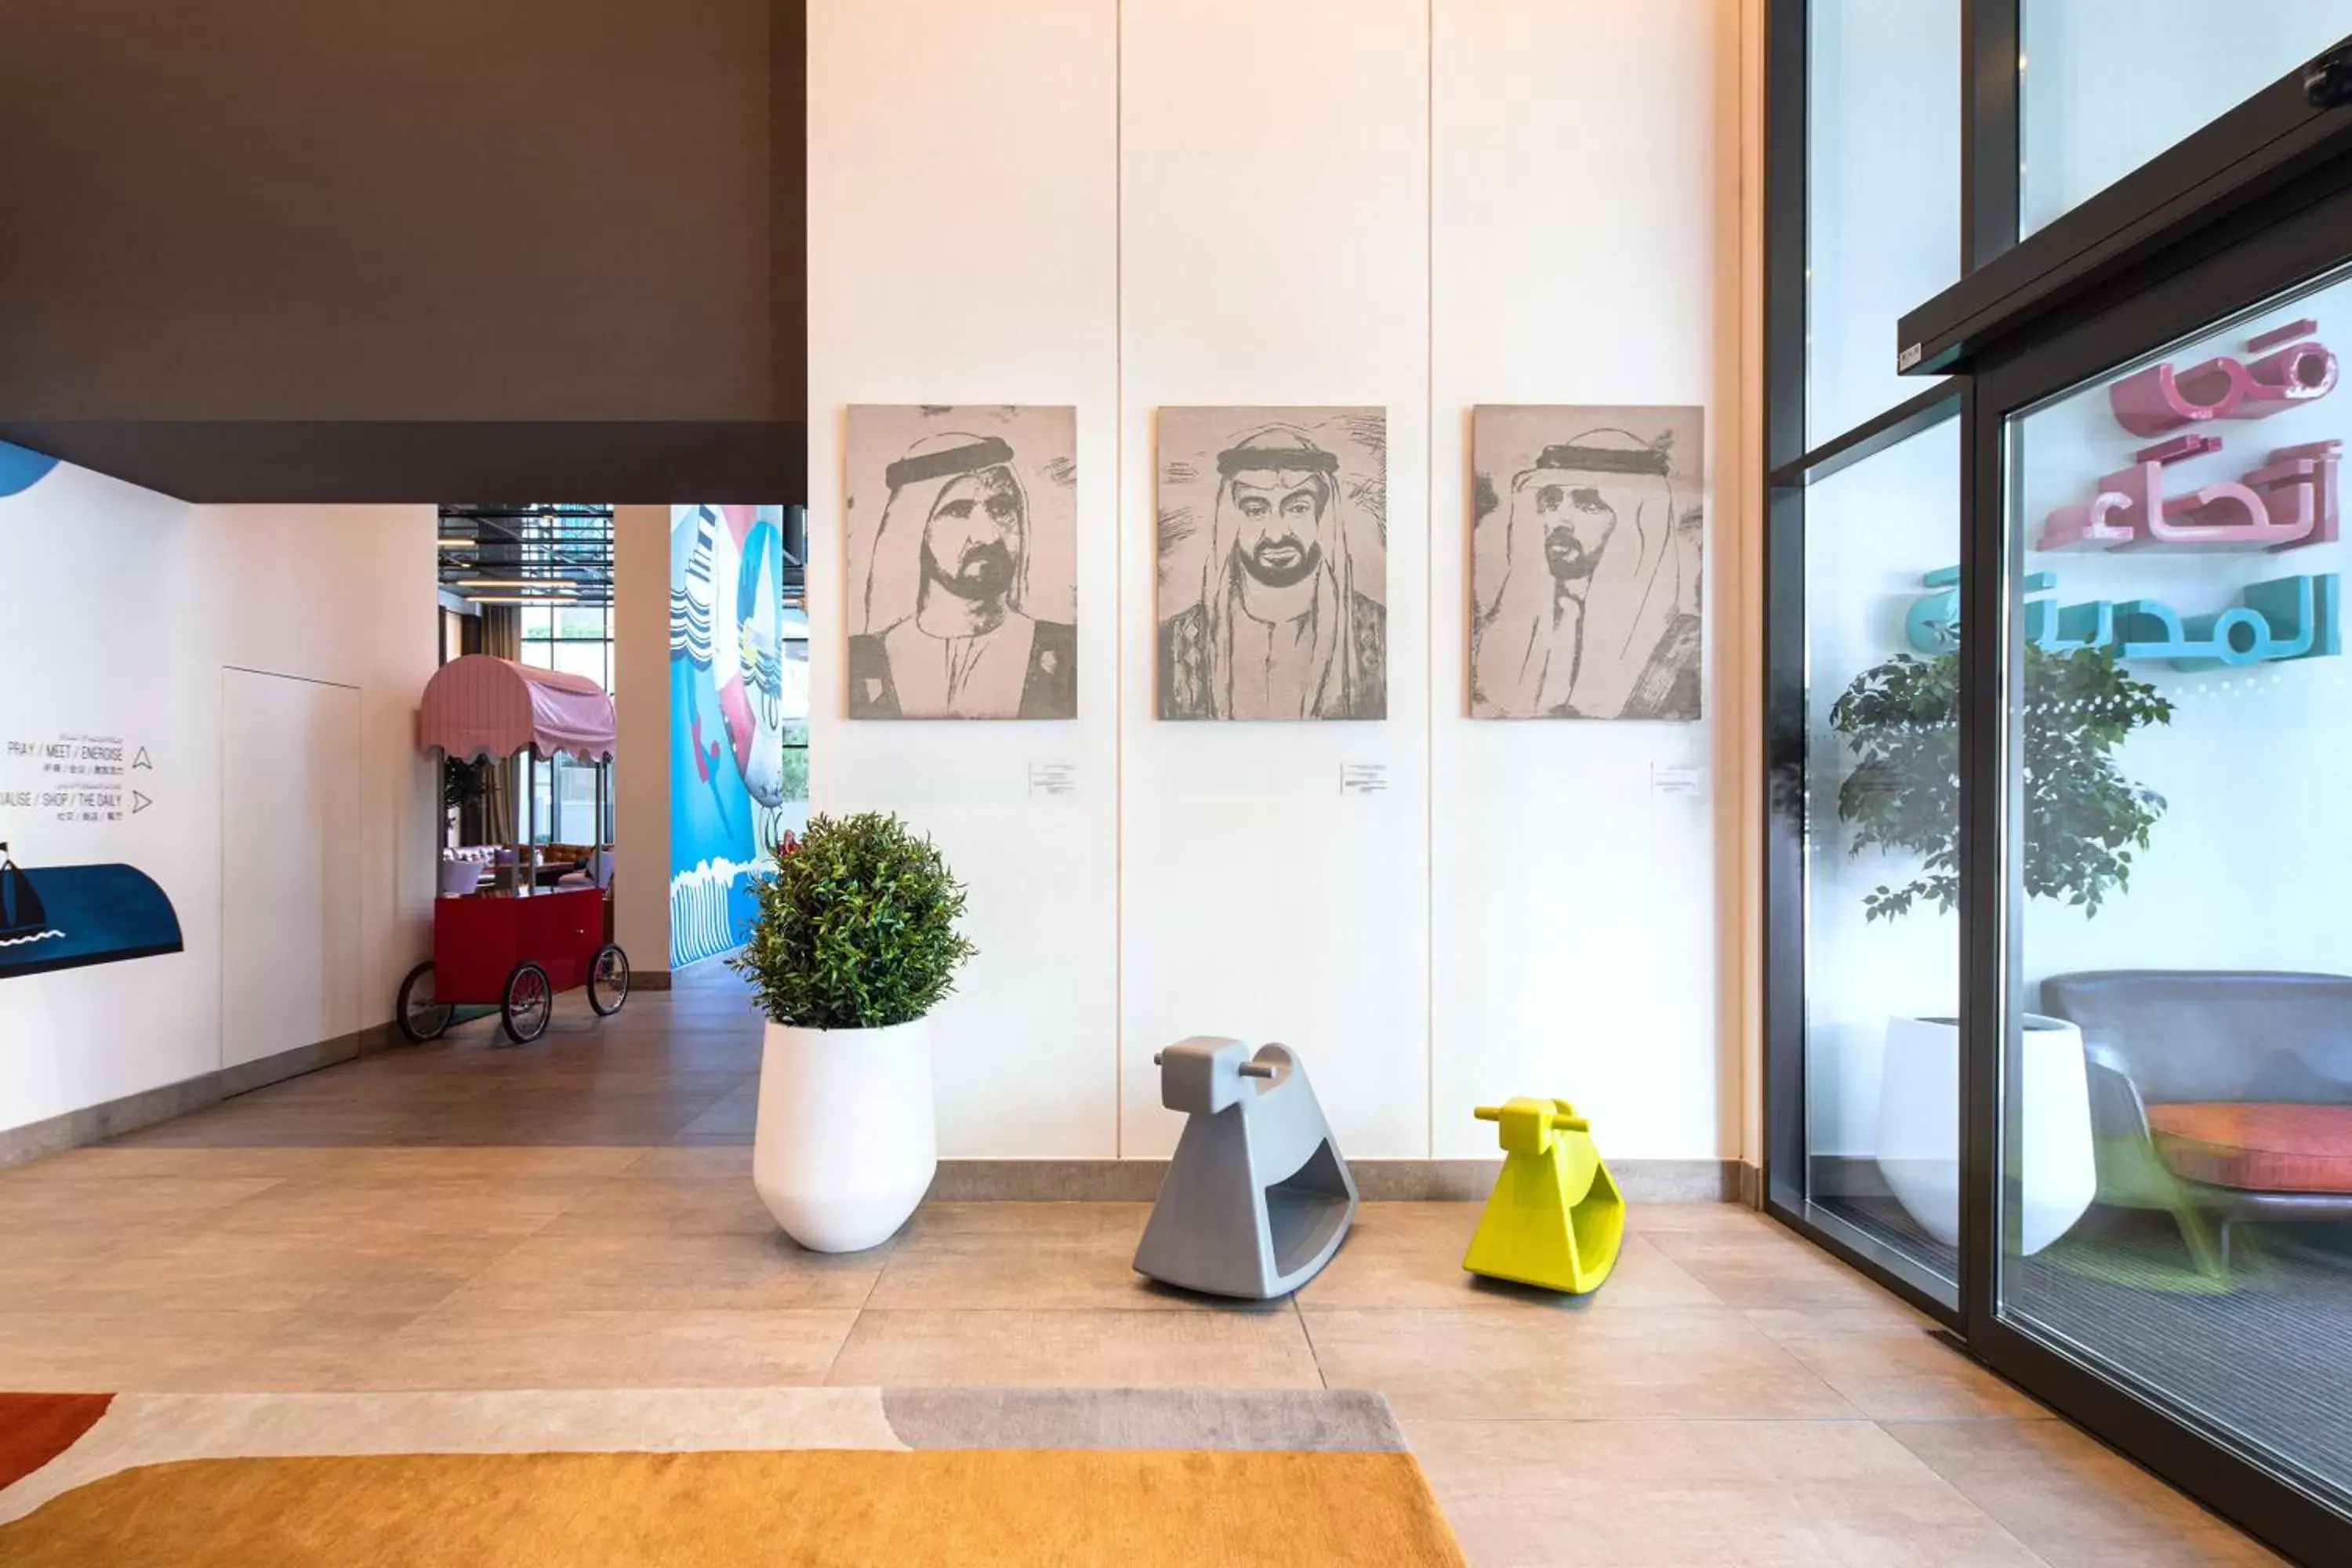 Lobby or reception in Rove Dubai Marina